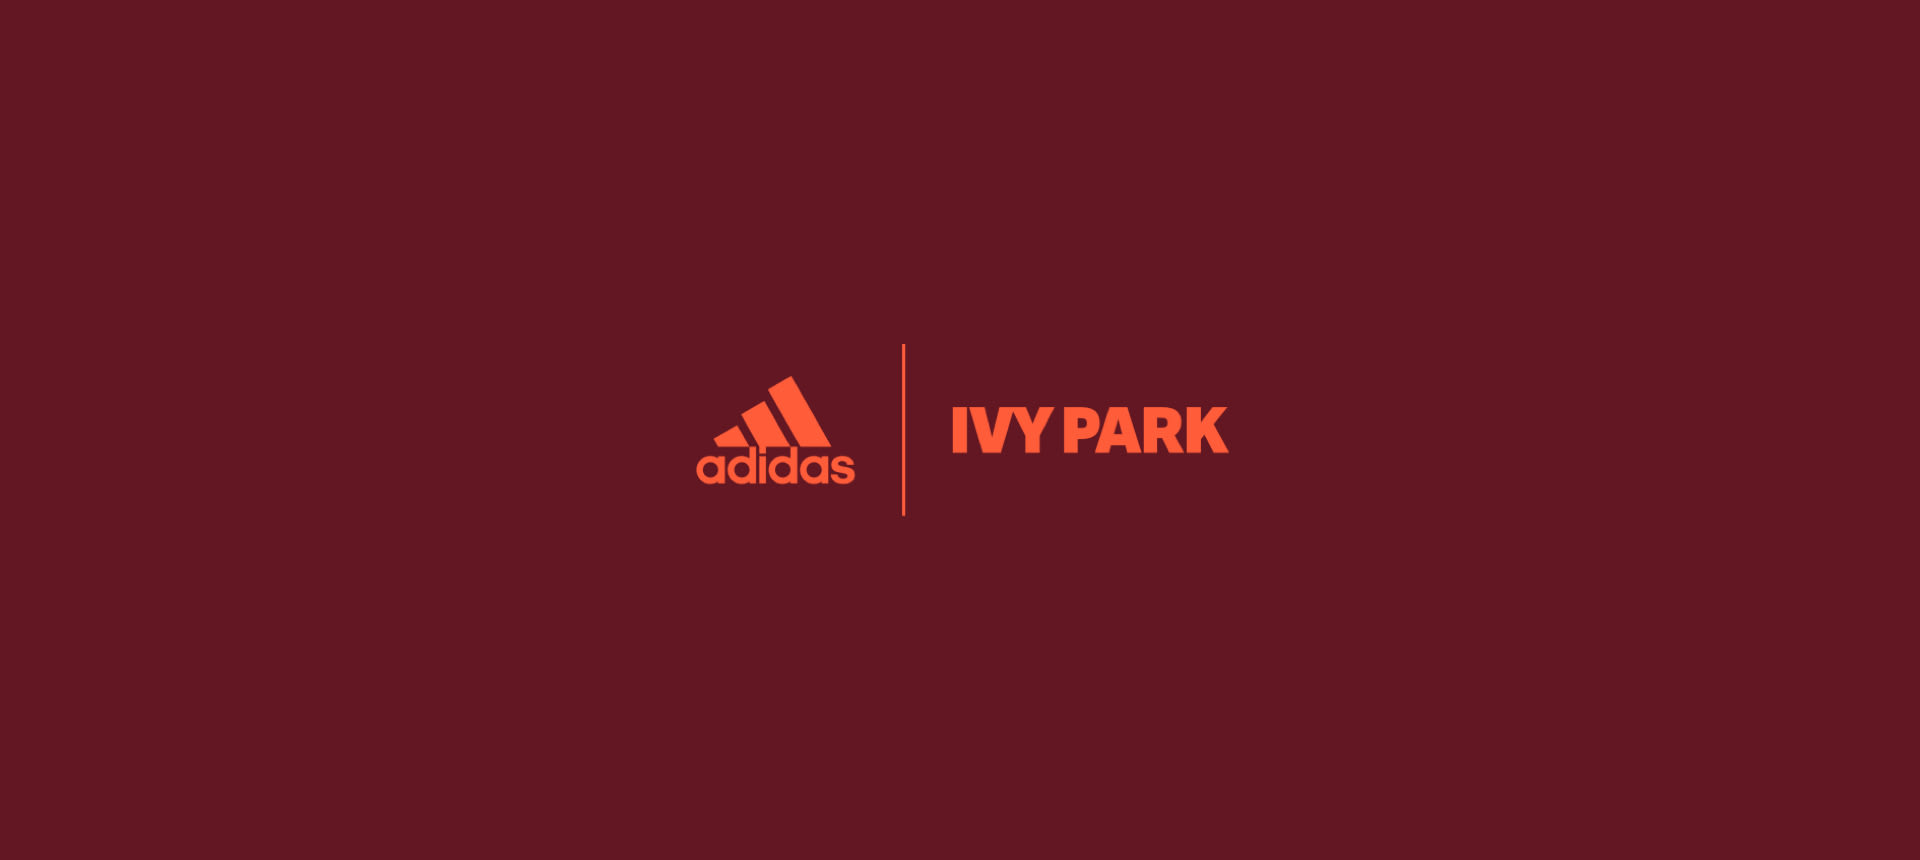 adidas x IVY PARK |adidas FR